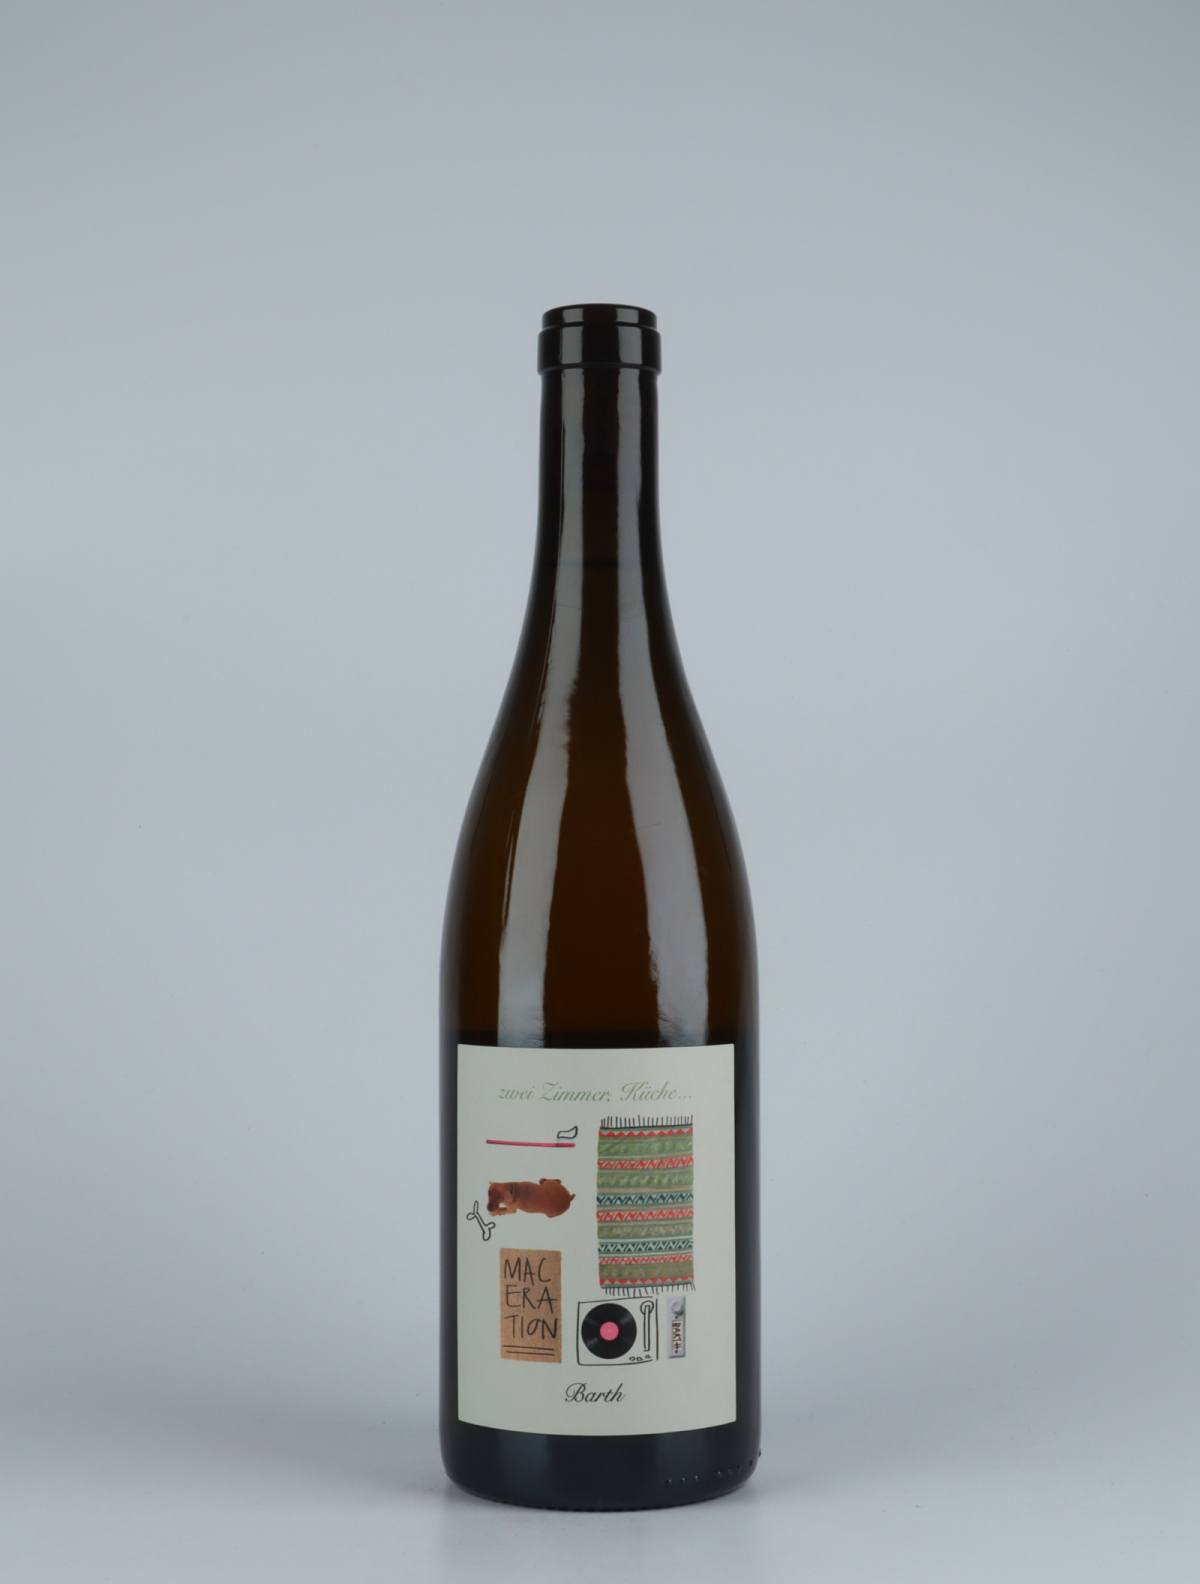 A bottle 2019 Zwei Zimmer, Küche, Barth - Maceration Orange wine from , Rheinhessen in Germany